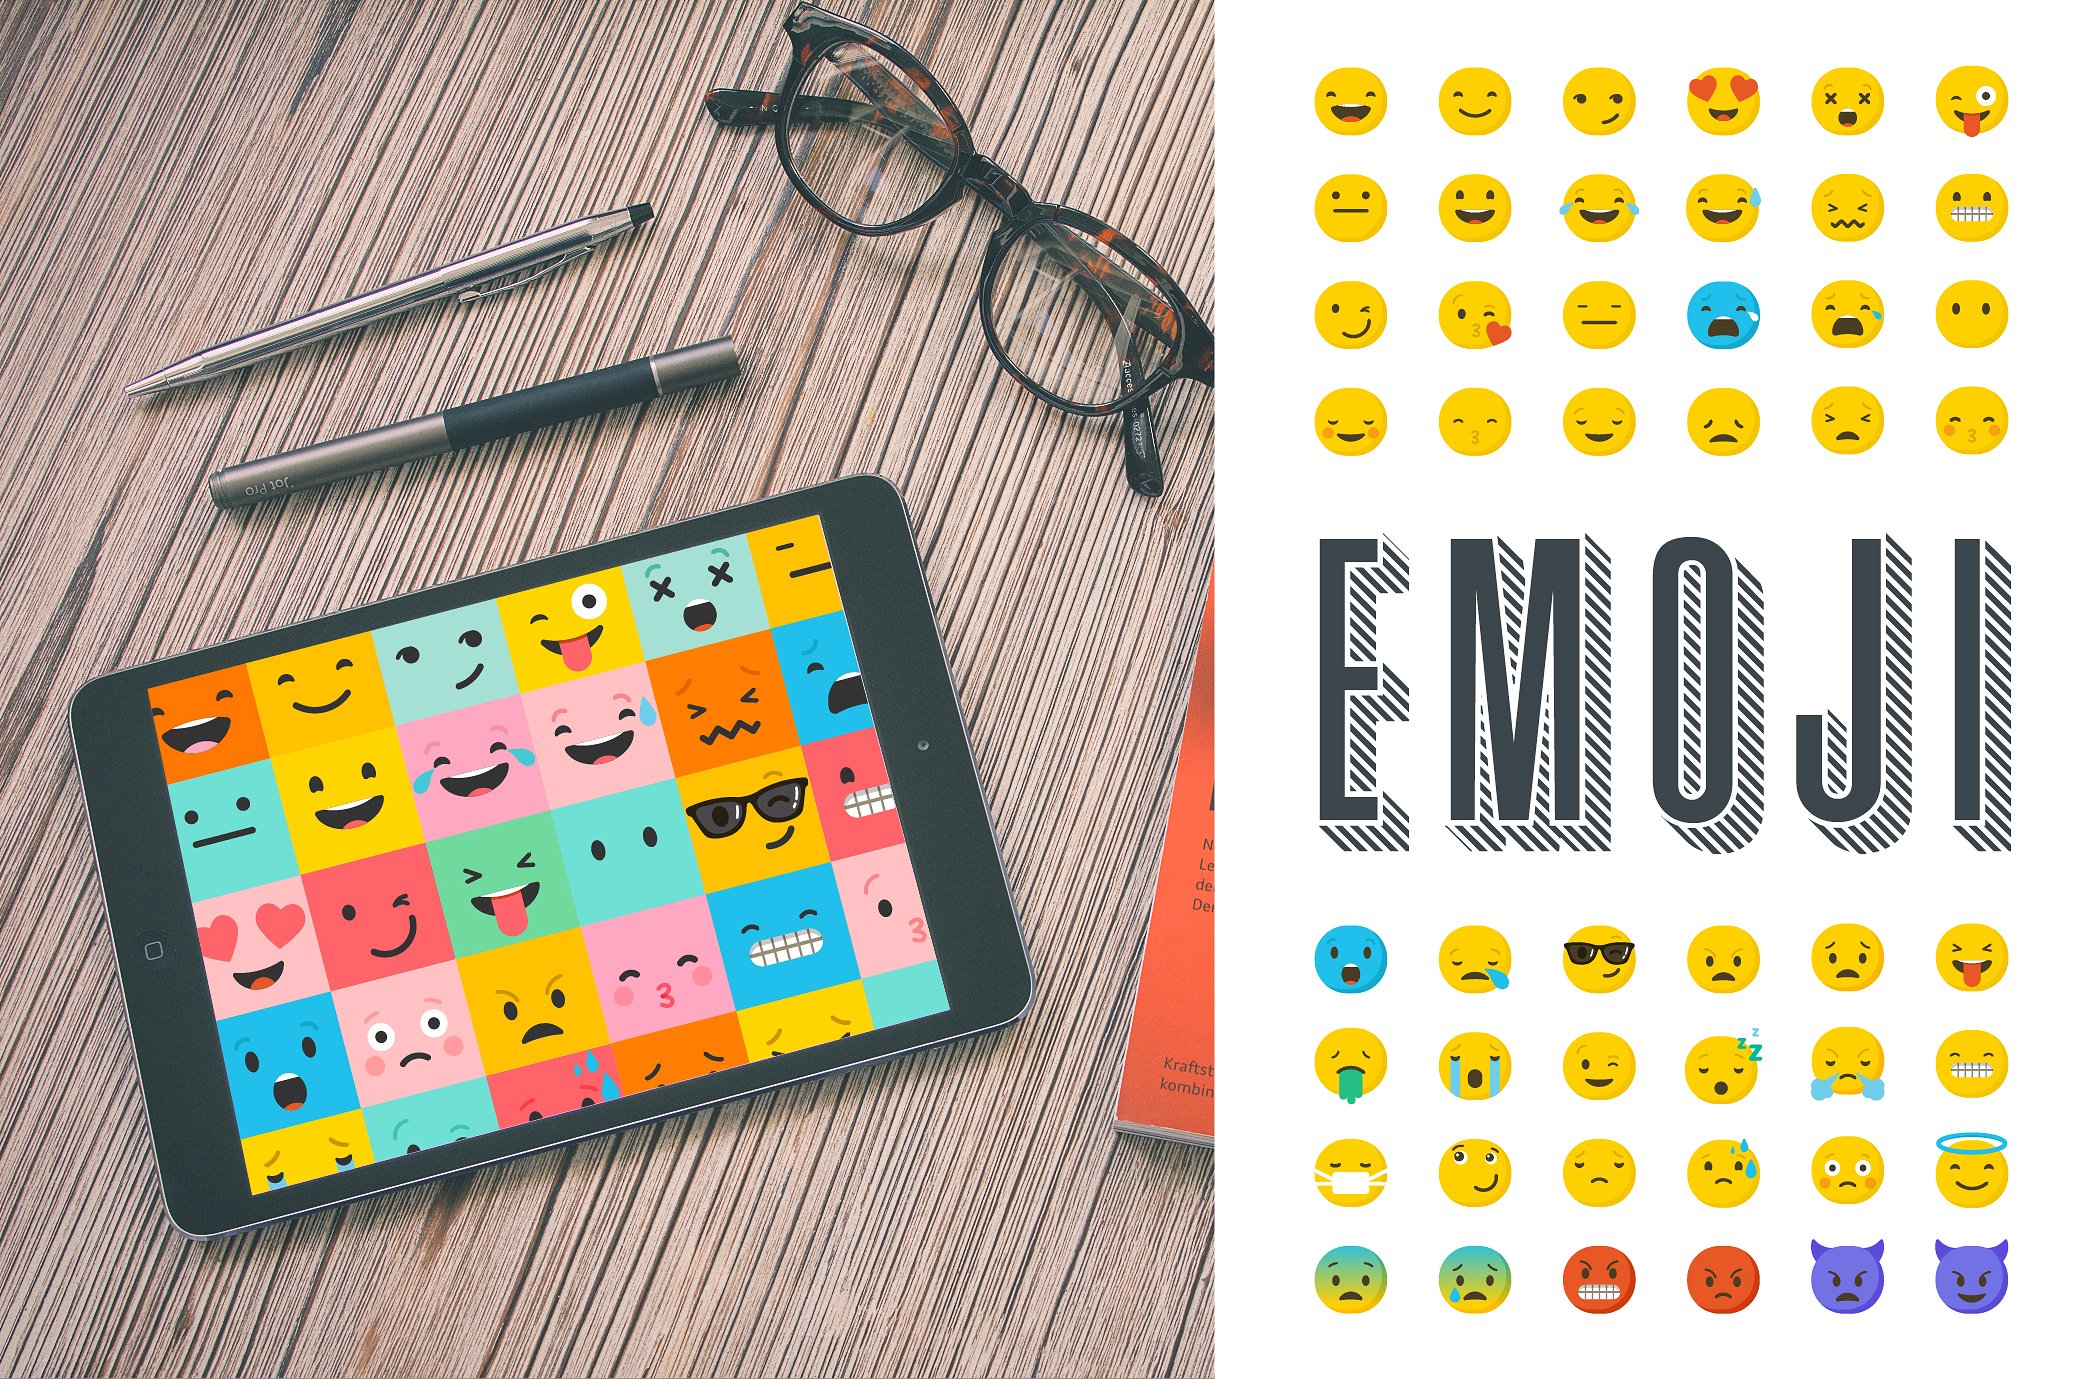 一套很酷的表情符号图标 Emoji / emoticons